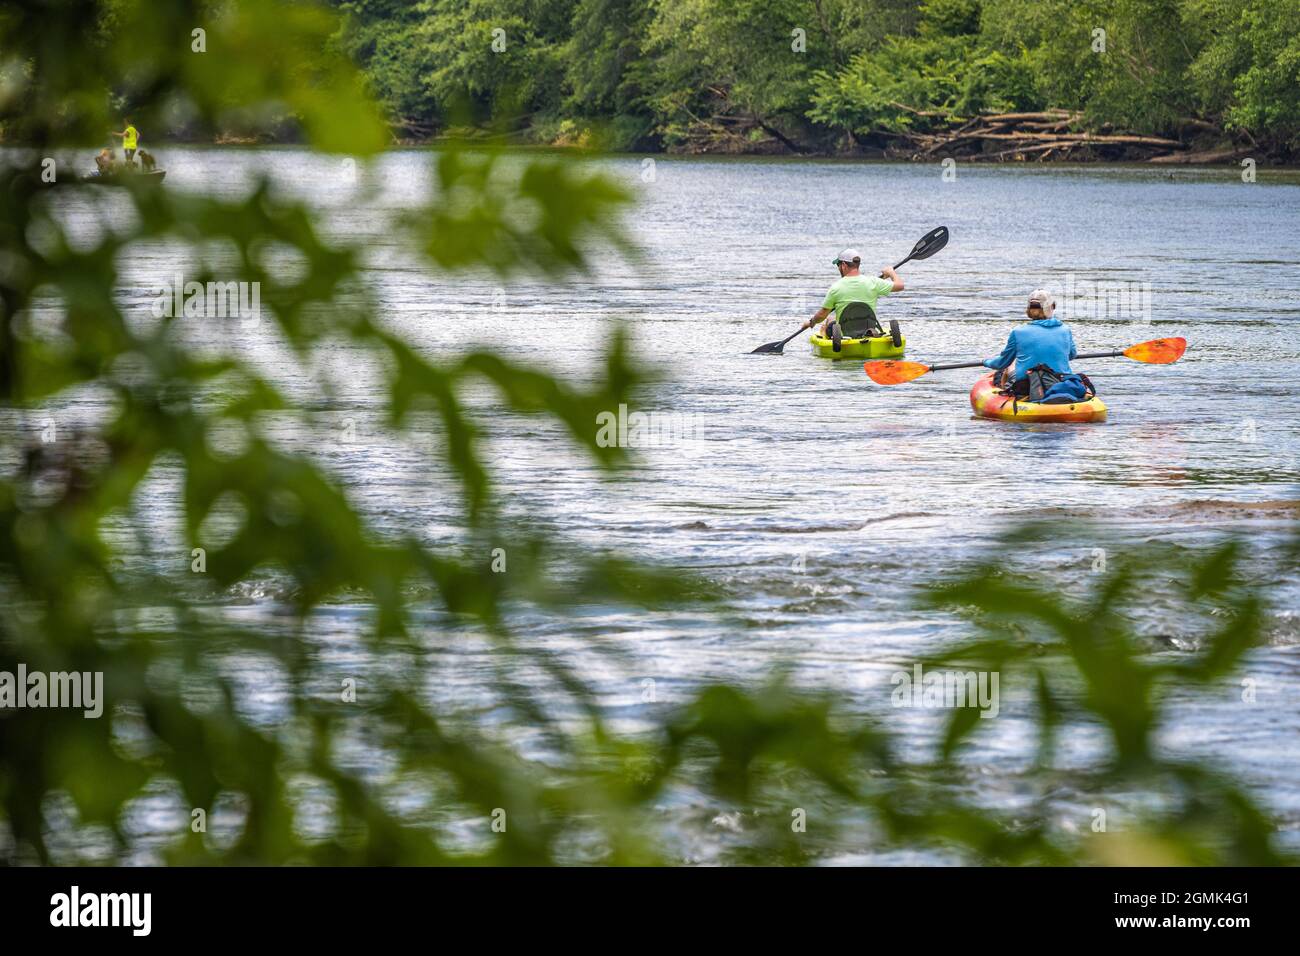 Couple de kayaks pagayants sur la rivière Chattahoochee le long de l'unité Island Ford de l'aire de loisirs nationale de la rivière Chattahoochee près d'Atlanta, GA. Banque D'Images